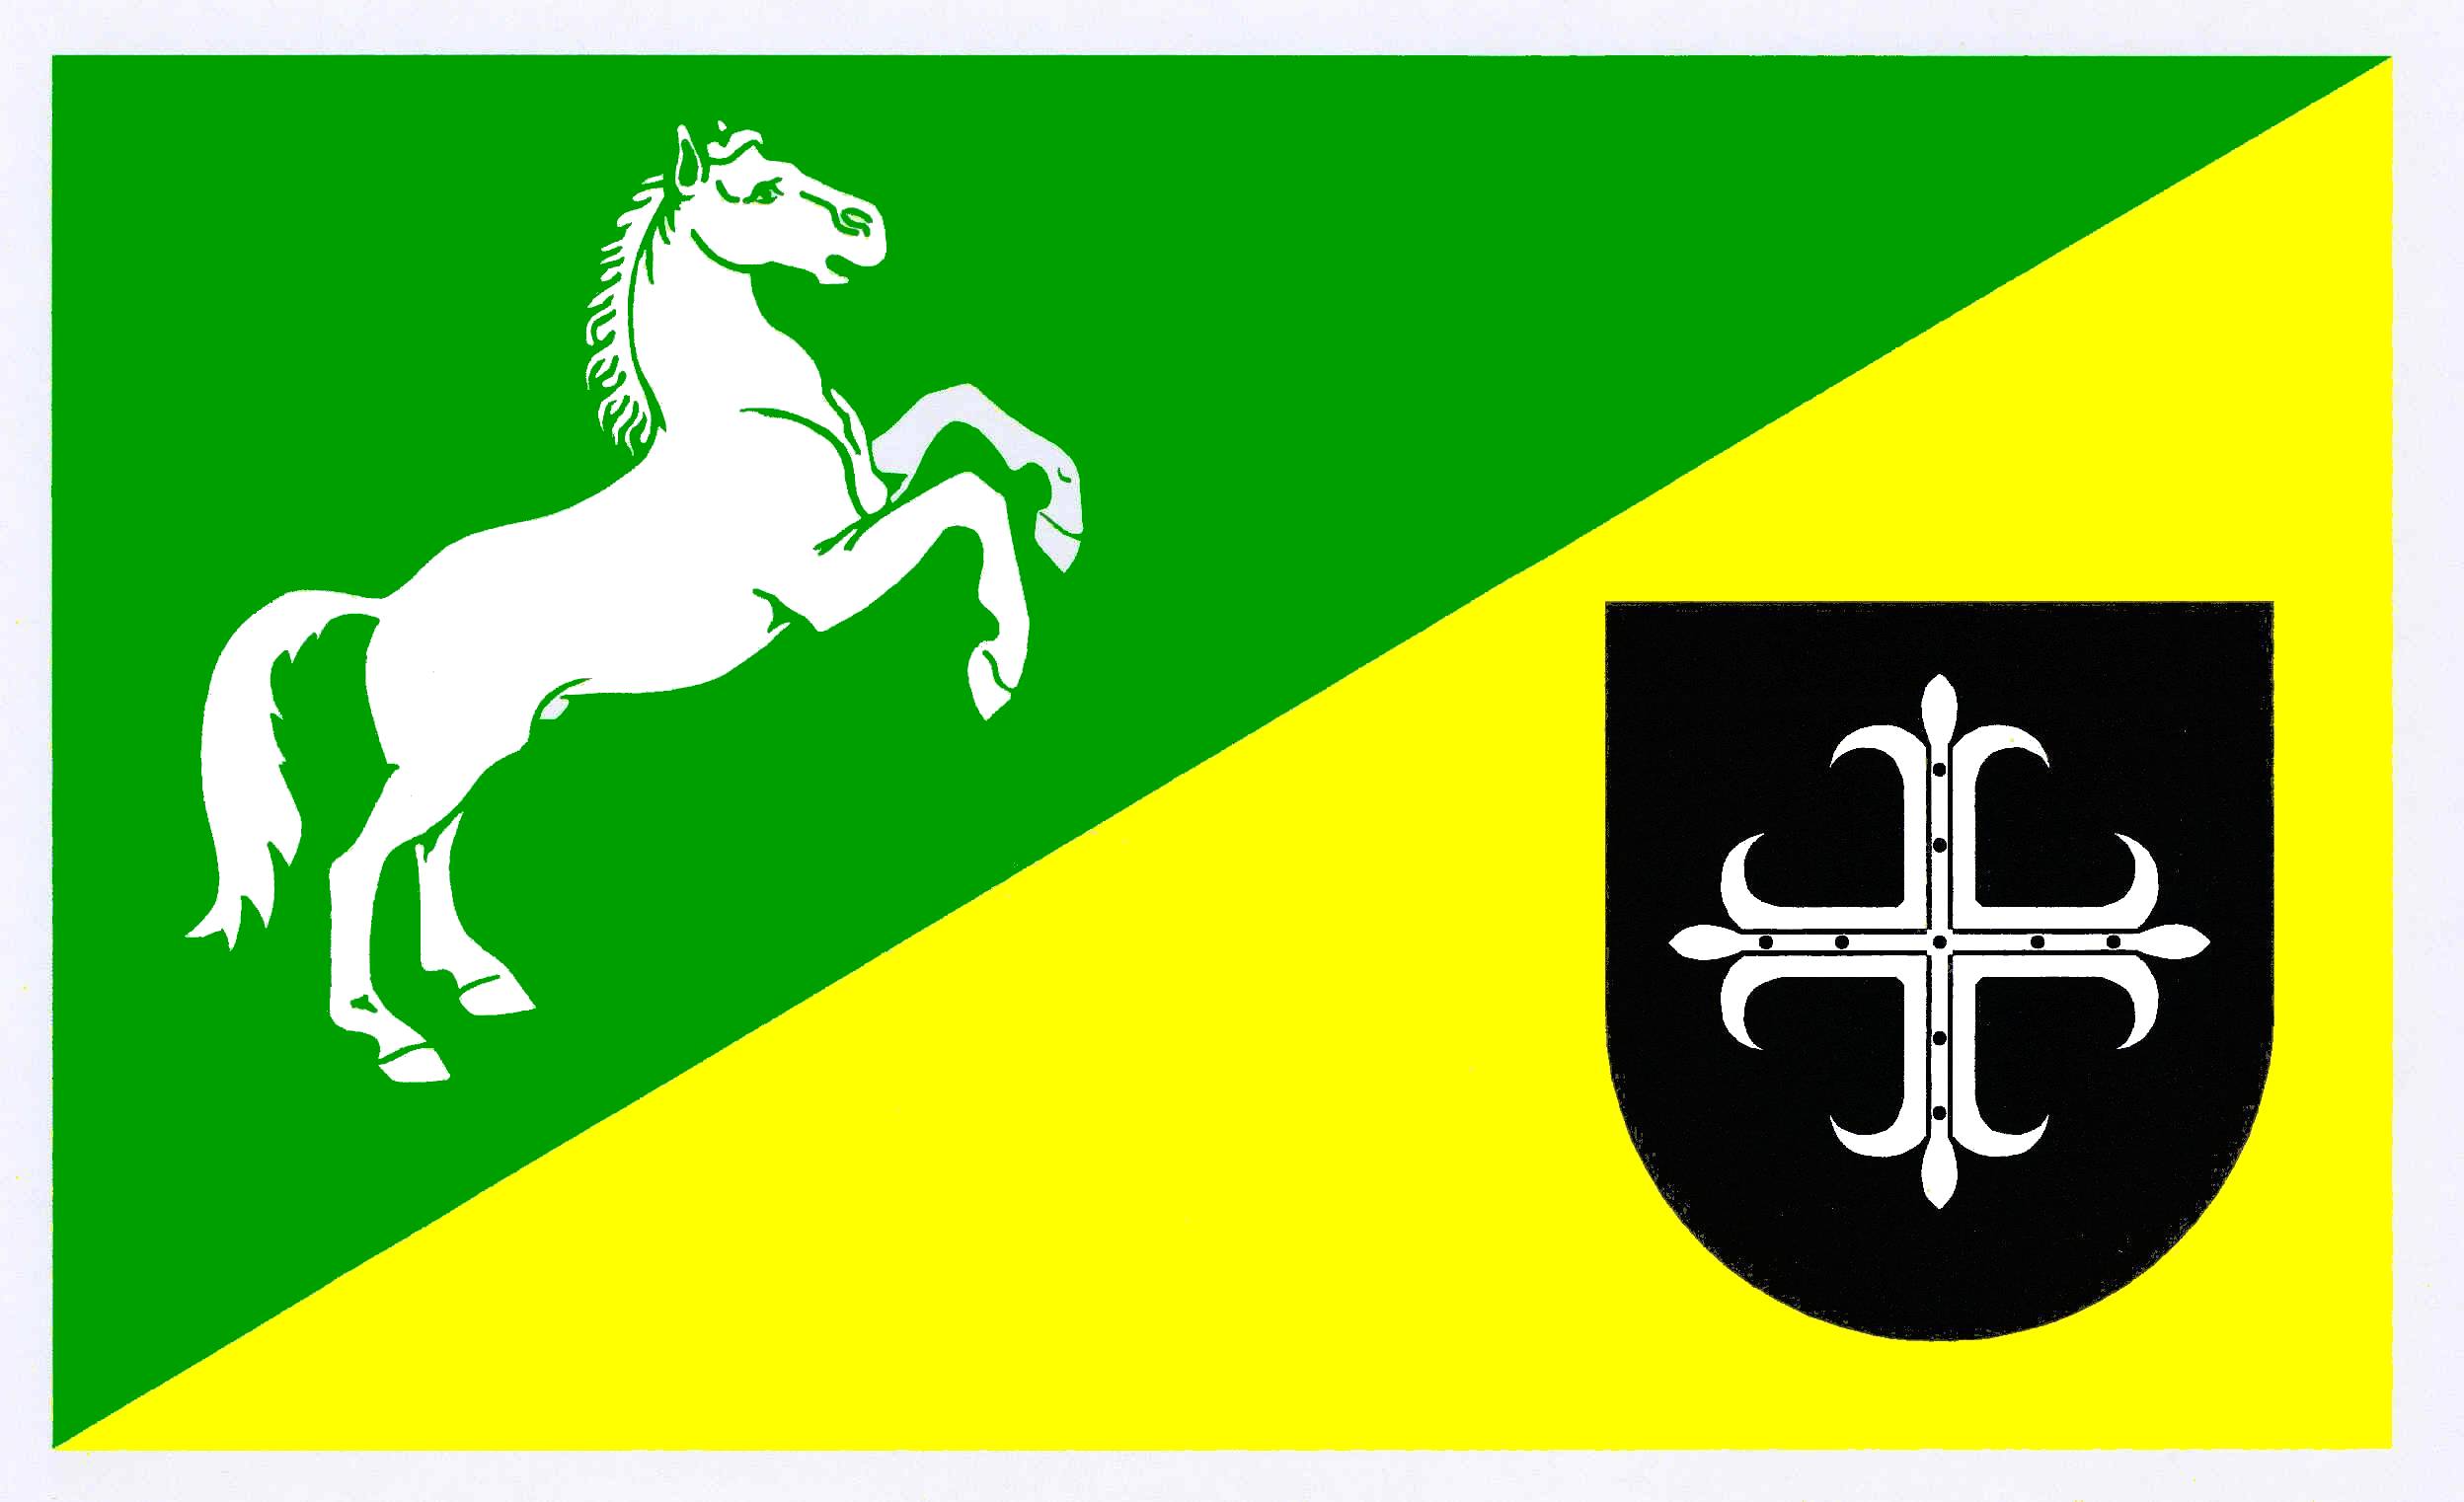 Flagge Gemeinde Badendorf, Kreis Stormarn